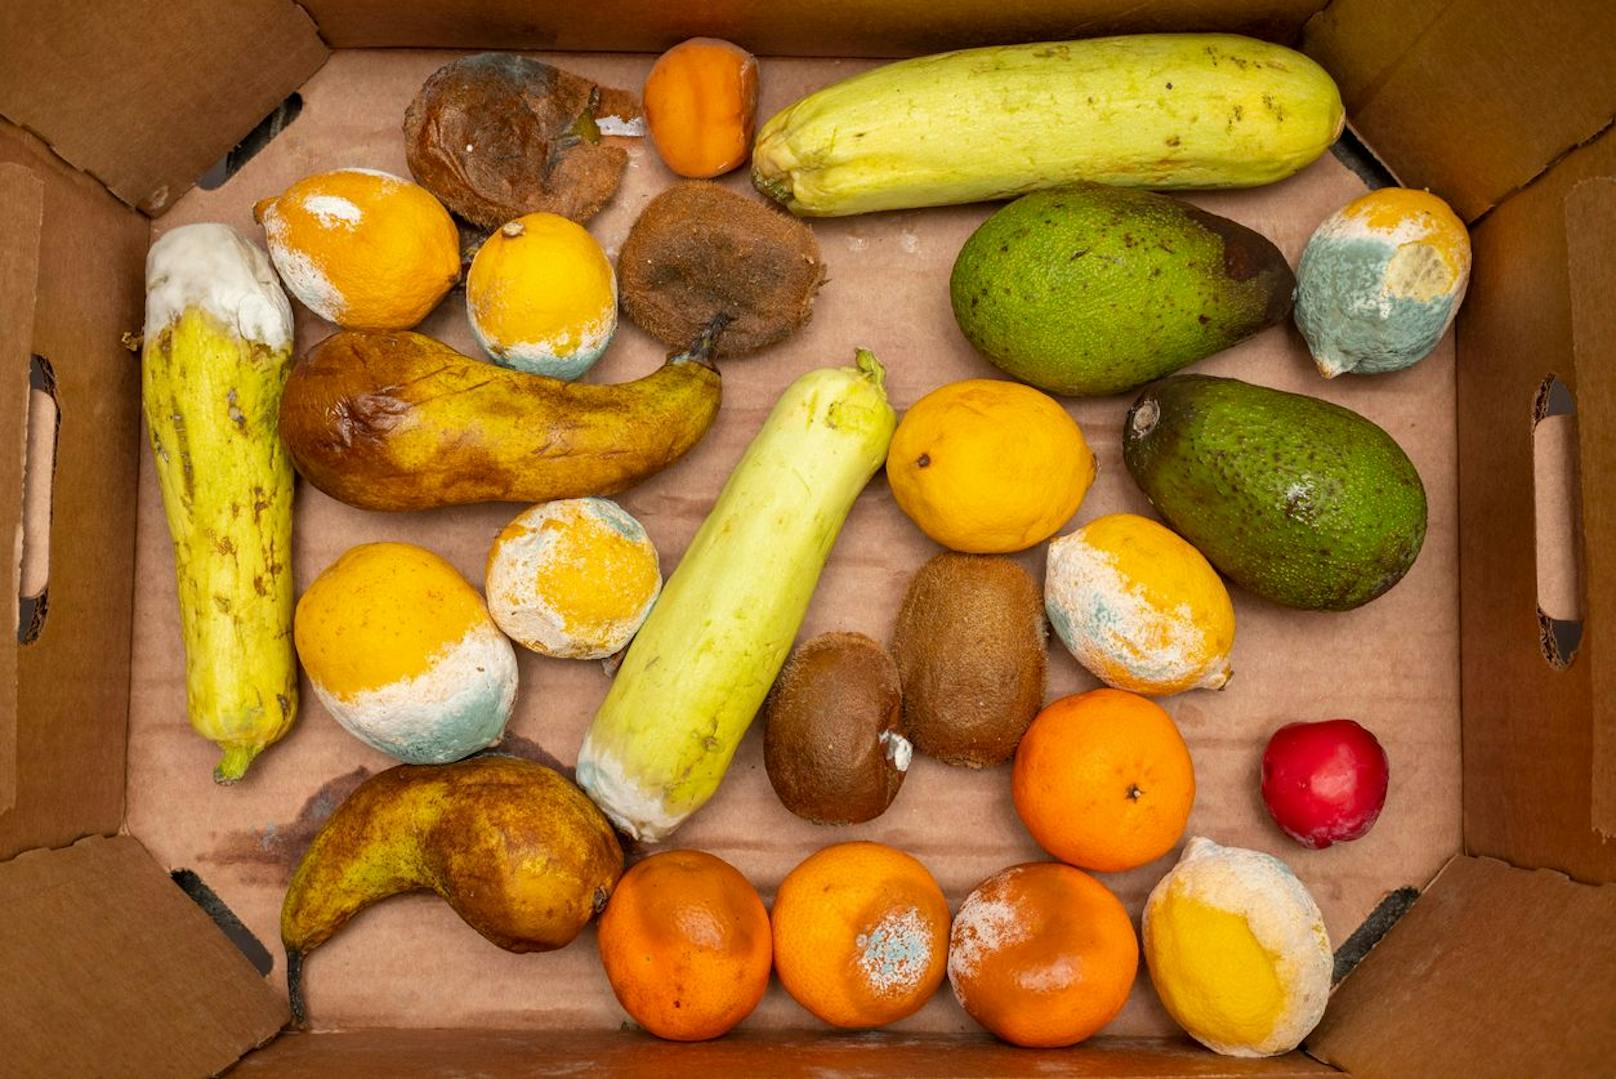 Testern vergeht Appetit: So verdorben ist Supermarkt-Obst